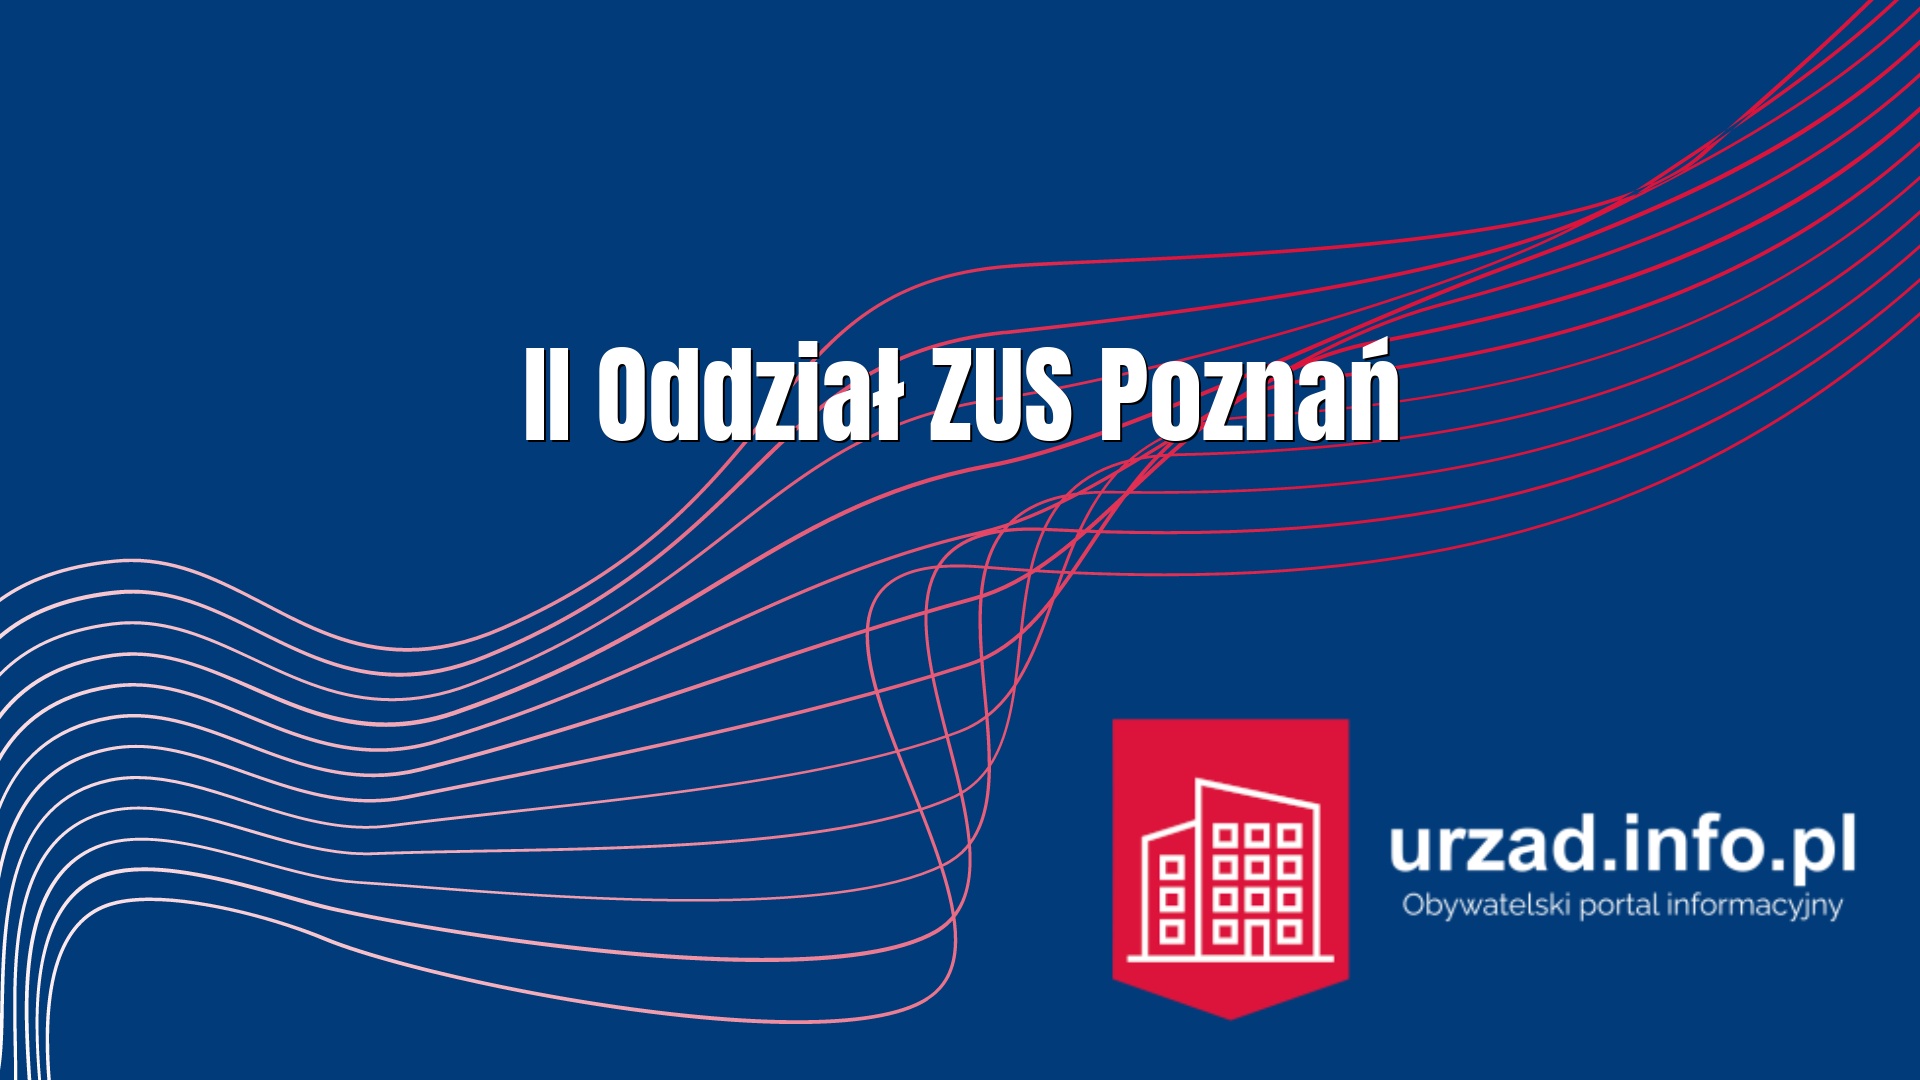 II Oddział ZUS Poznań – Zakład Ubezpieczeń Społecznych w Poznaniu